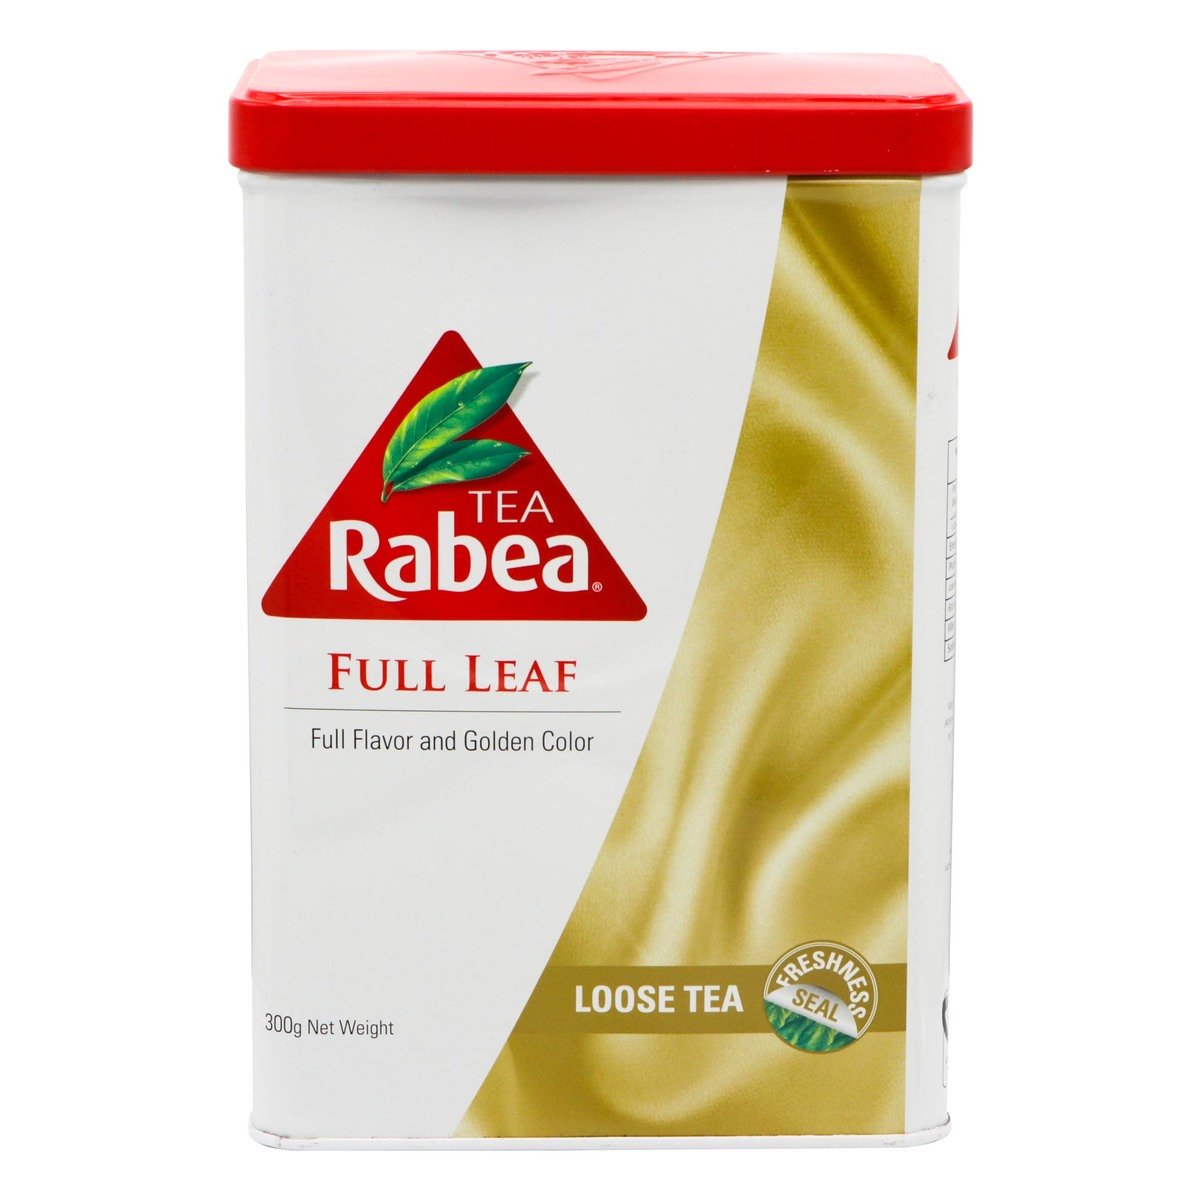 Rabea Full Leaf Tea 300g